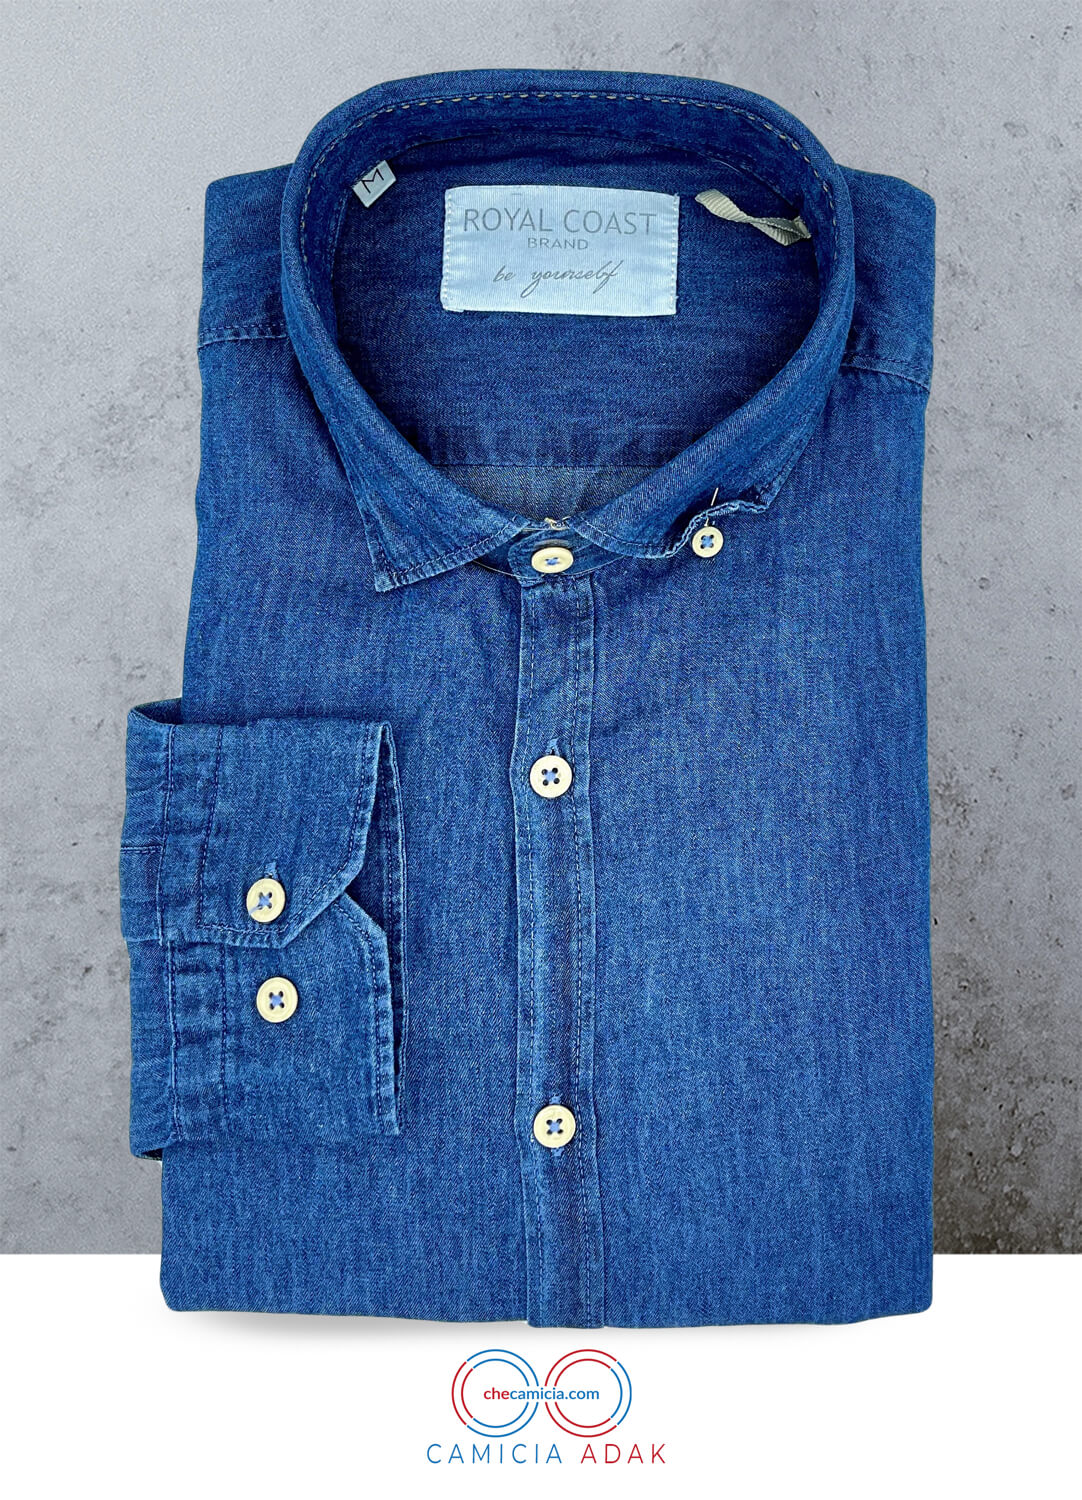 Camicia slim fit uomo blu jeans Adak collo button down